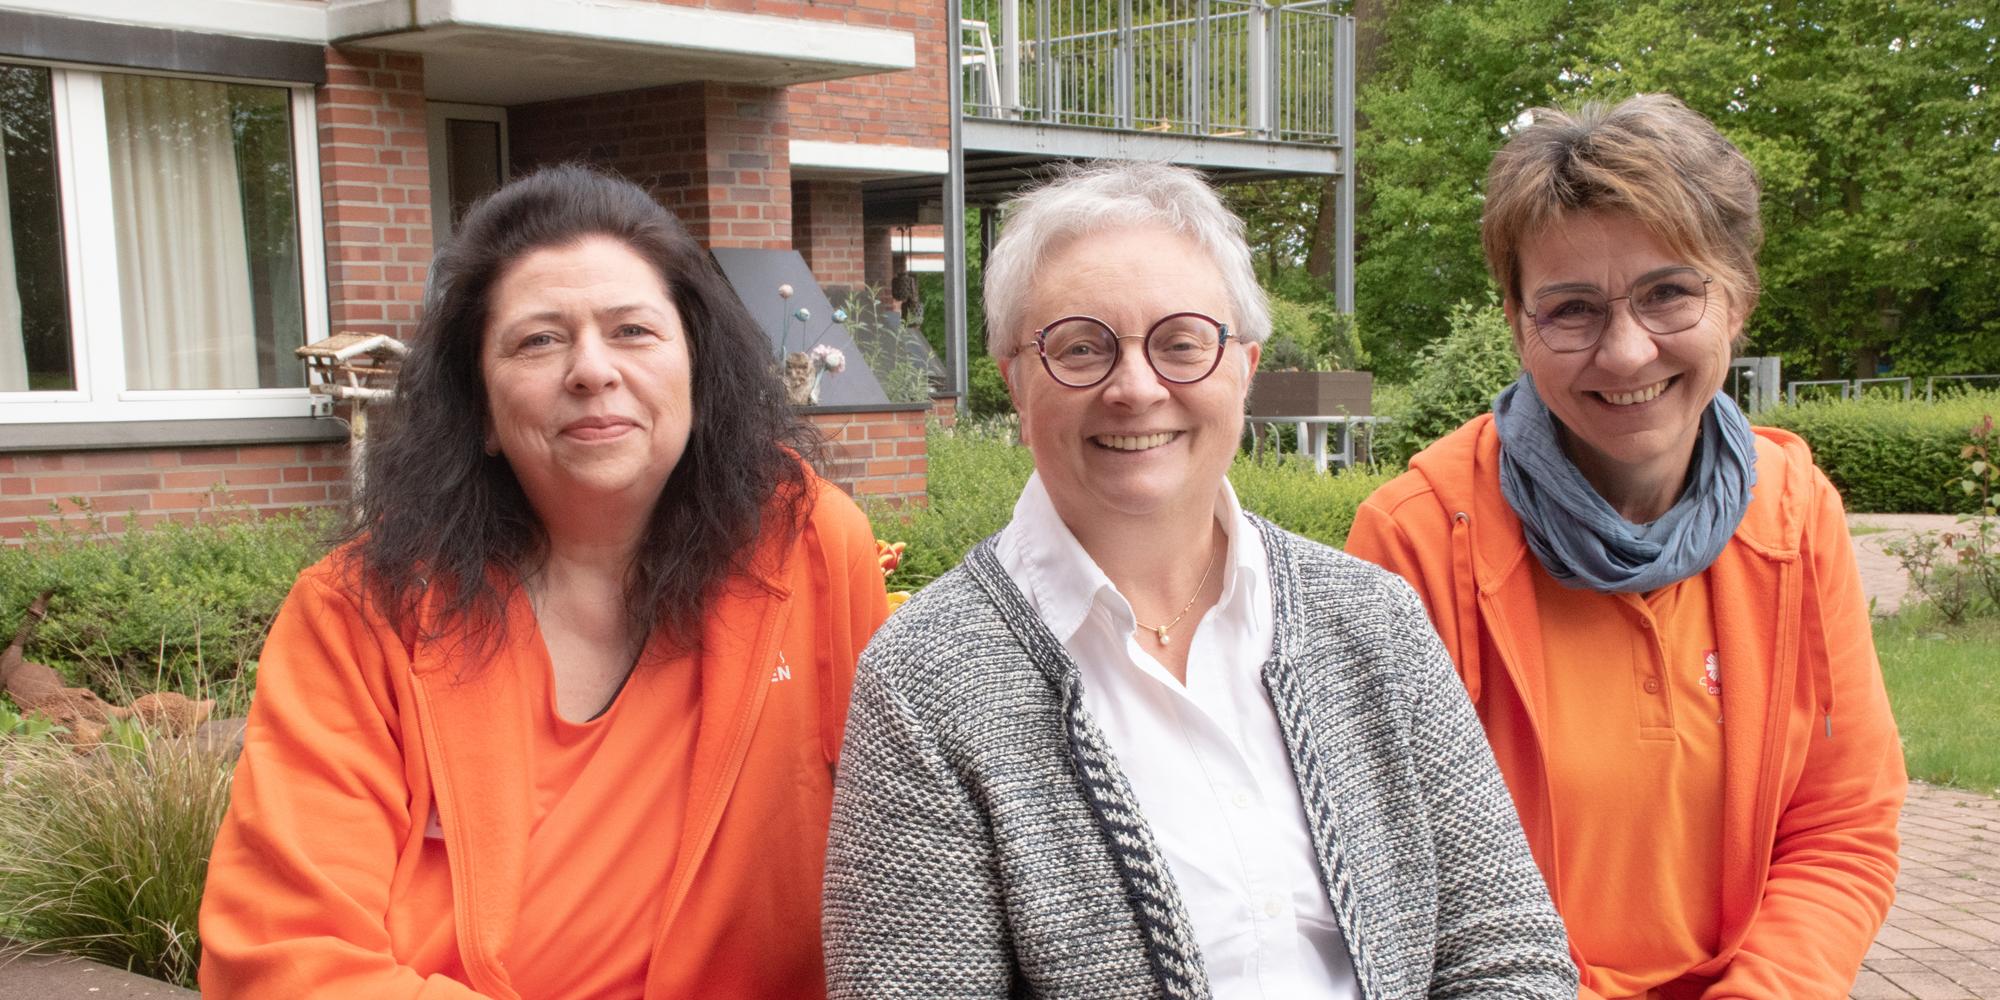 Monika Nienhaus (M.) leitete bislang den Palliativdienst des Caritasverbandes Ahaus-Vreden. Ihre Nachfolgerinnen sind Birgit Linnemann (l.) und Monika Terhart (r.).